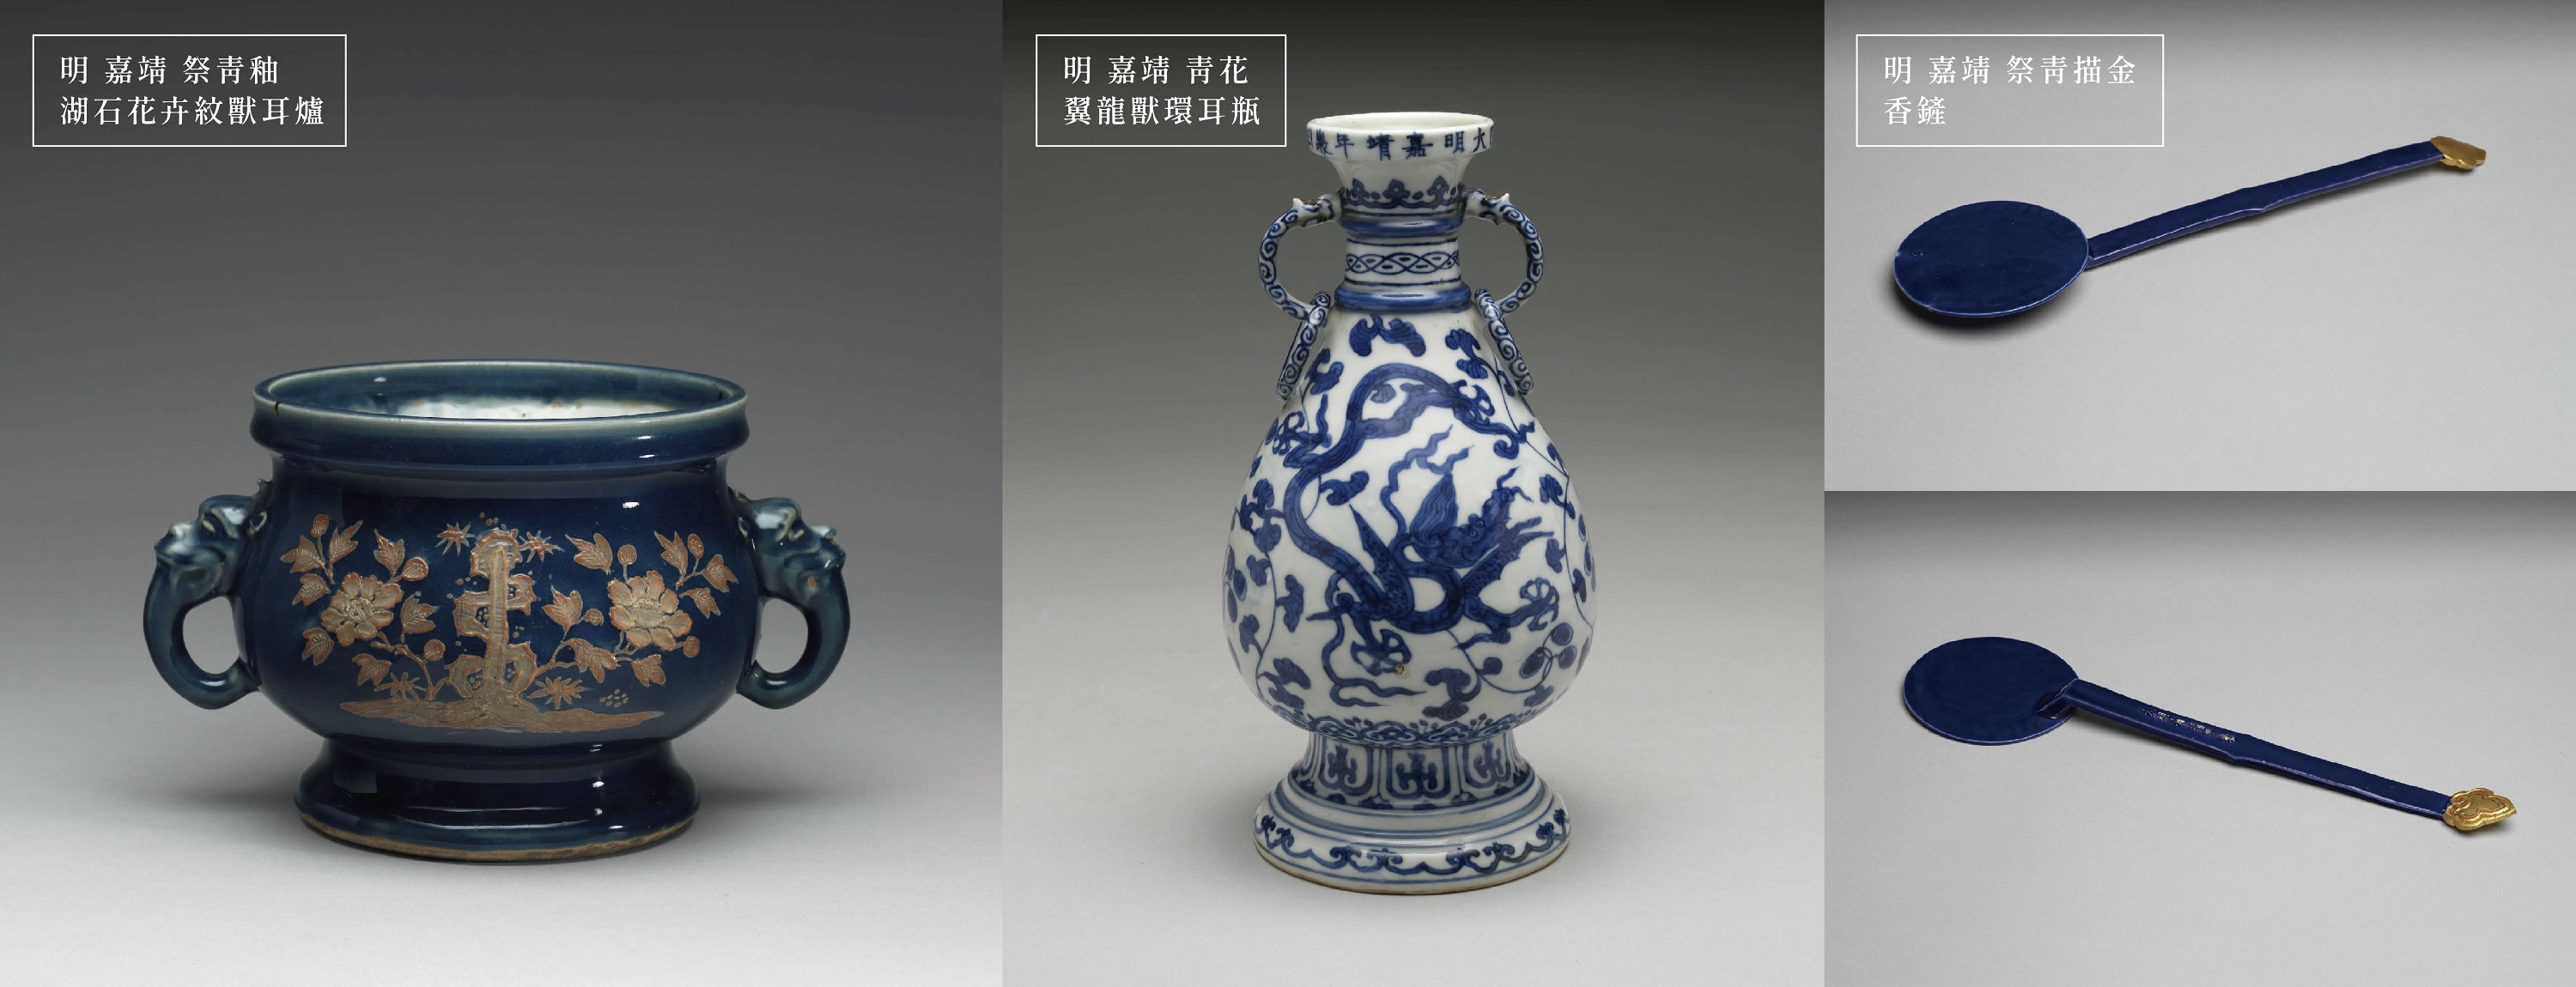 看明代嘉靖帝对瓷器的影响，台北故宫展“花样何处来”